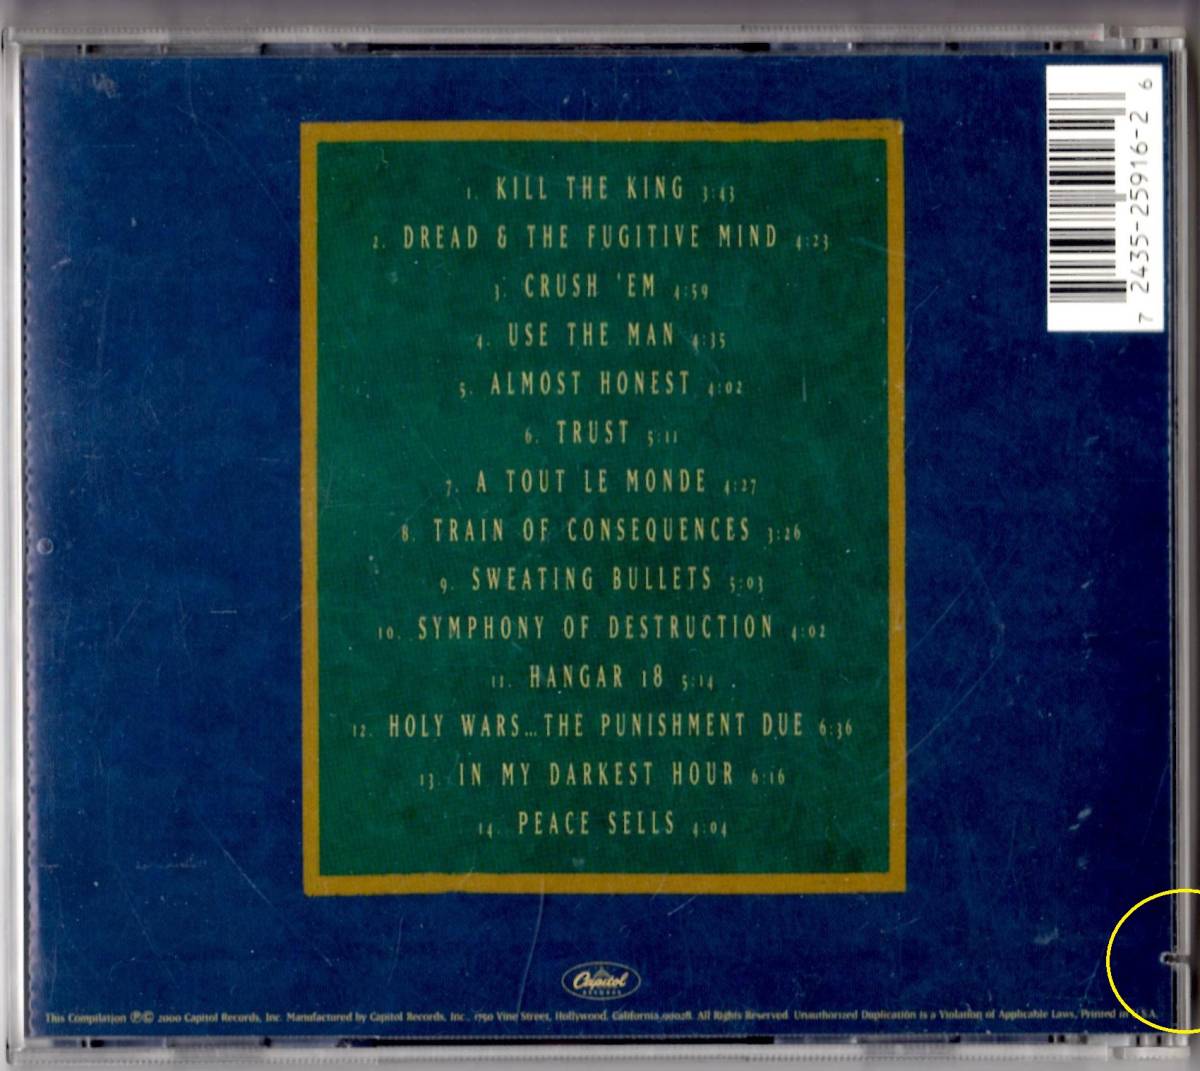 Used CD 輸入盤 メガデス Megadeth『キャピトル・パニッシュメント:ザ・メガデス・イヤーズ』傷有り- Capitol Punishment (2000年)全14曲